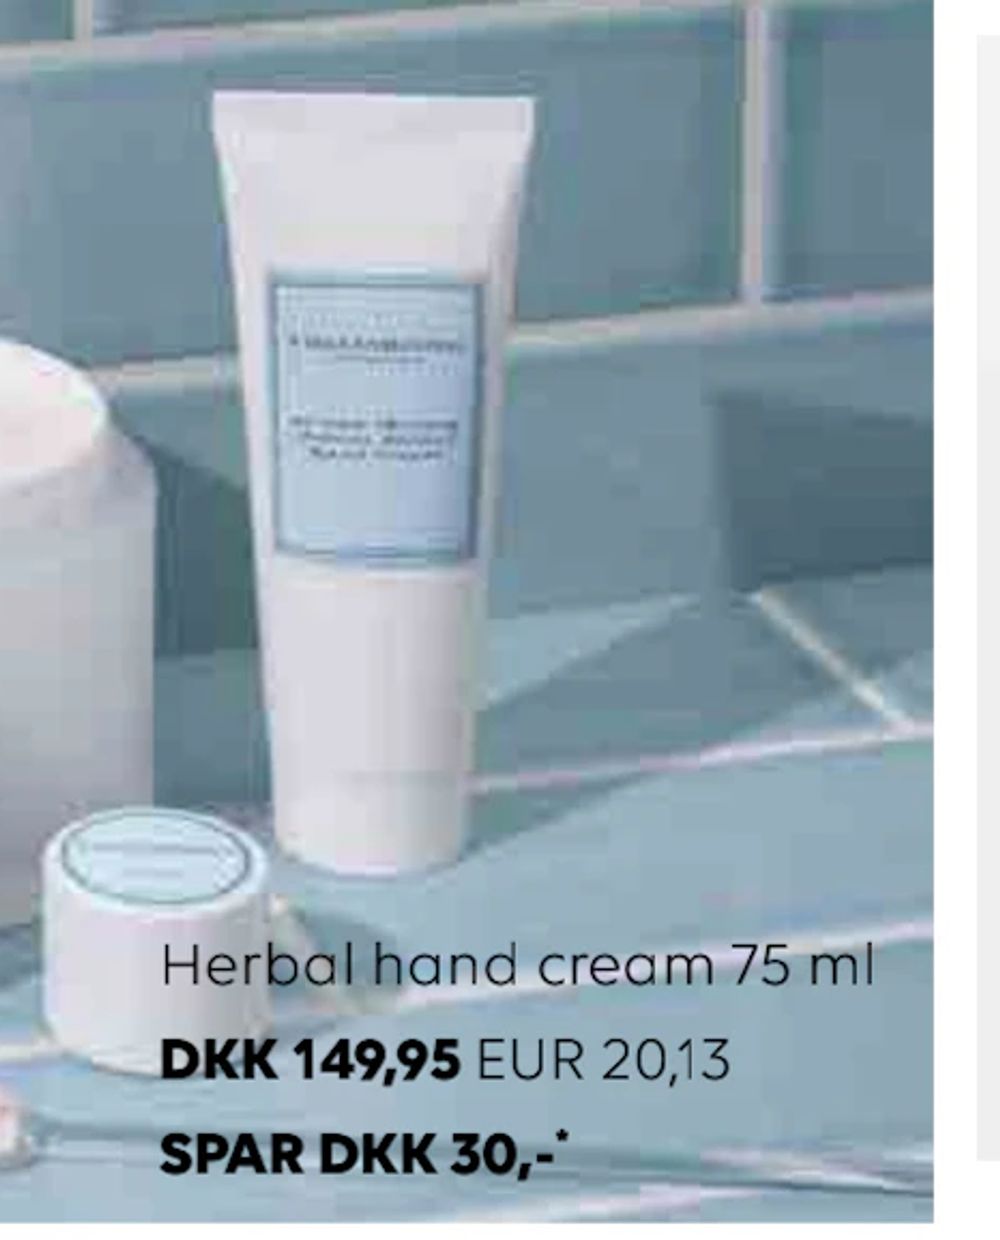 Erbjudanden på Herbal hand cream 75 ml från Scandlines Travel Shop för 20,13 €